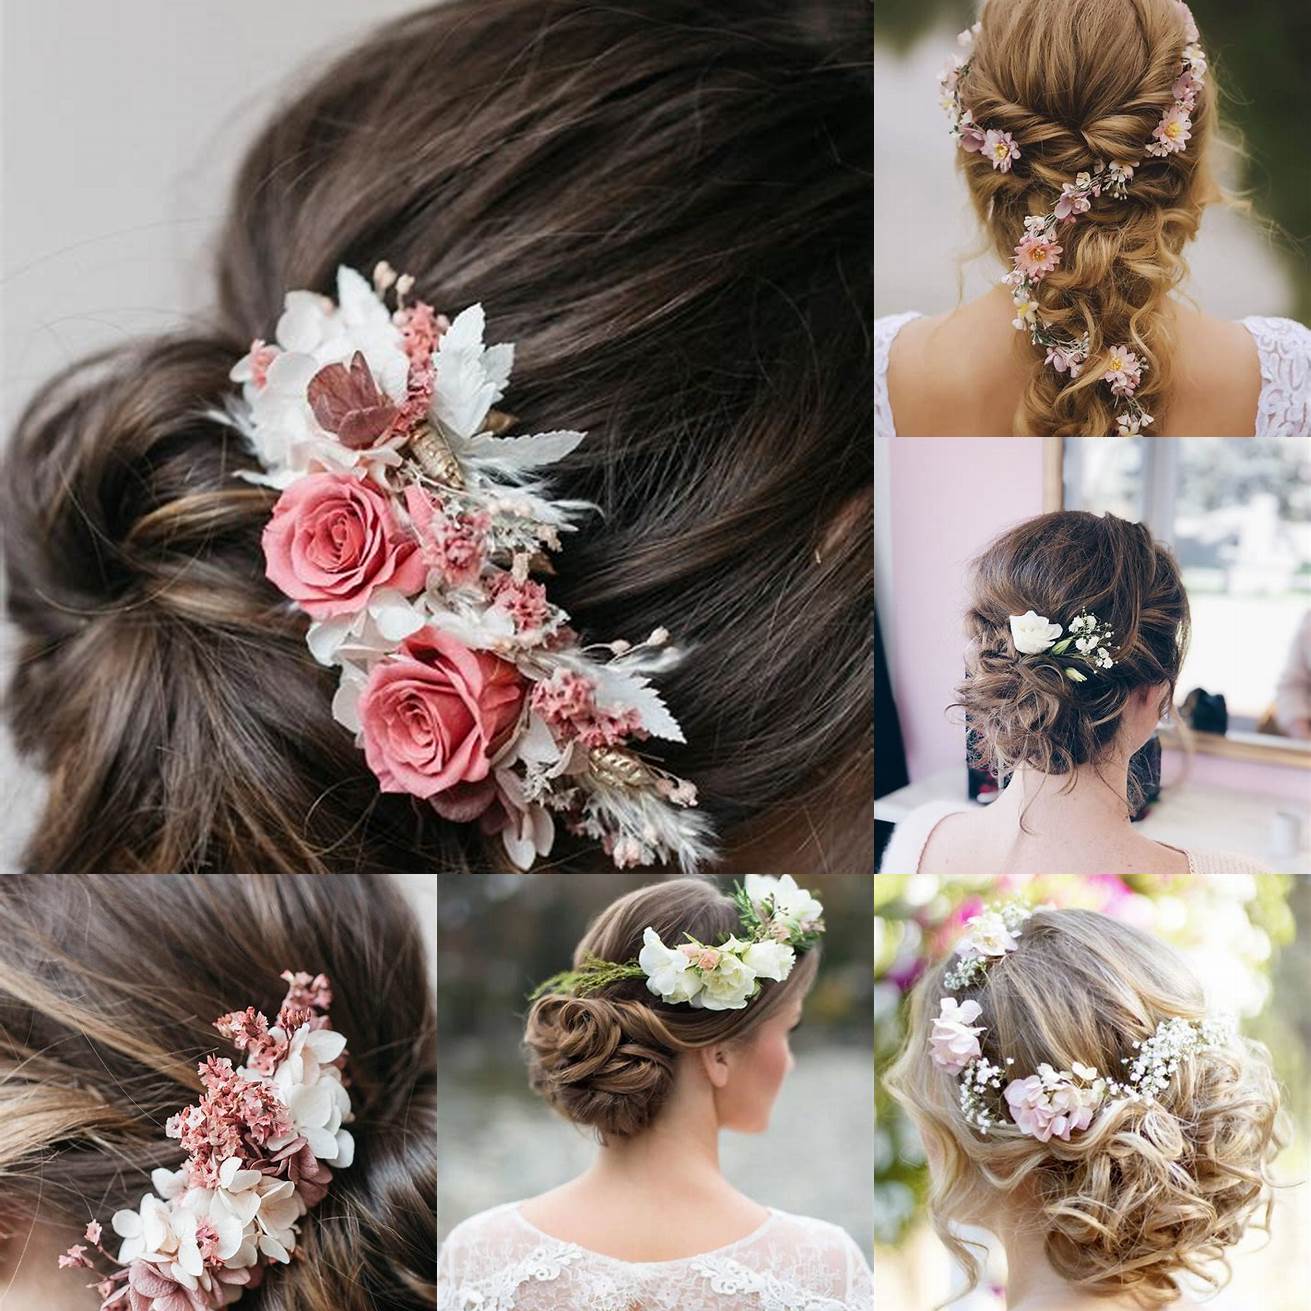 Fleurs les fleurs sont un accessoire intemporel pour les coiffures de mariage Elles peuvent être portées sur des coiffures Nappy telles que les Bantu knots ou les tresses pour un effet romantique et sophistiqué